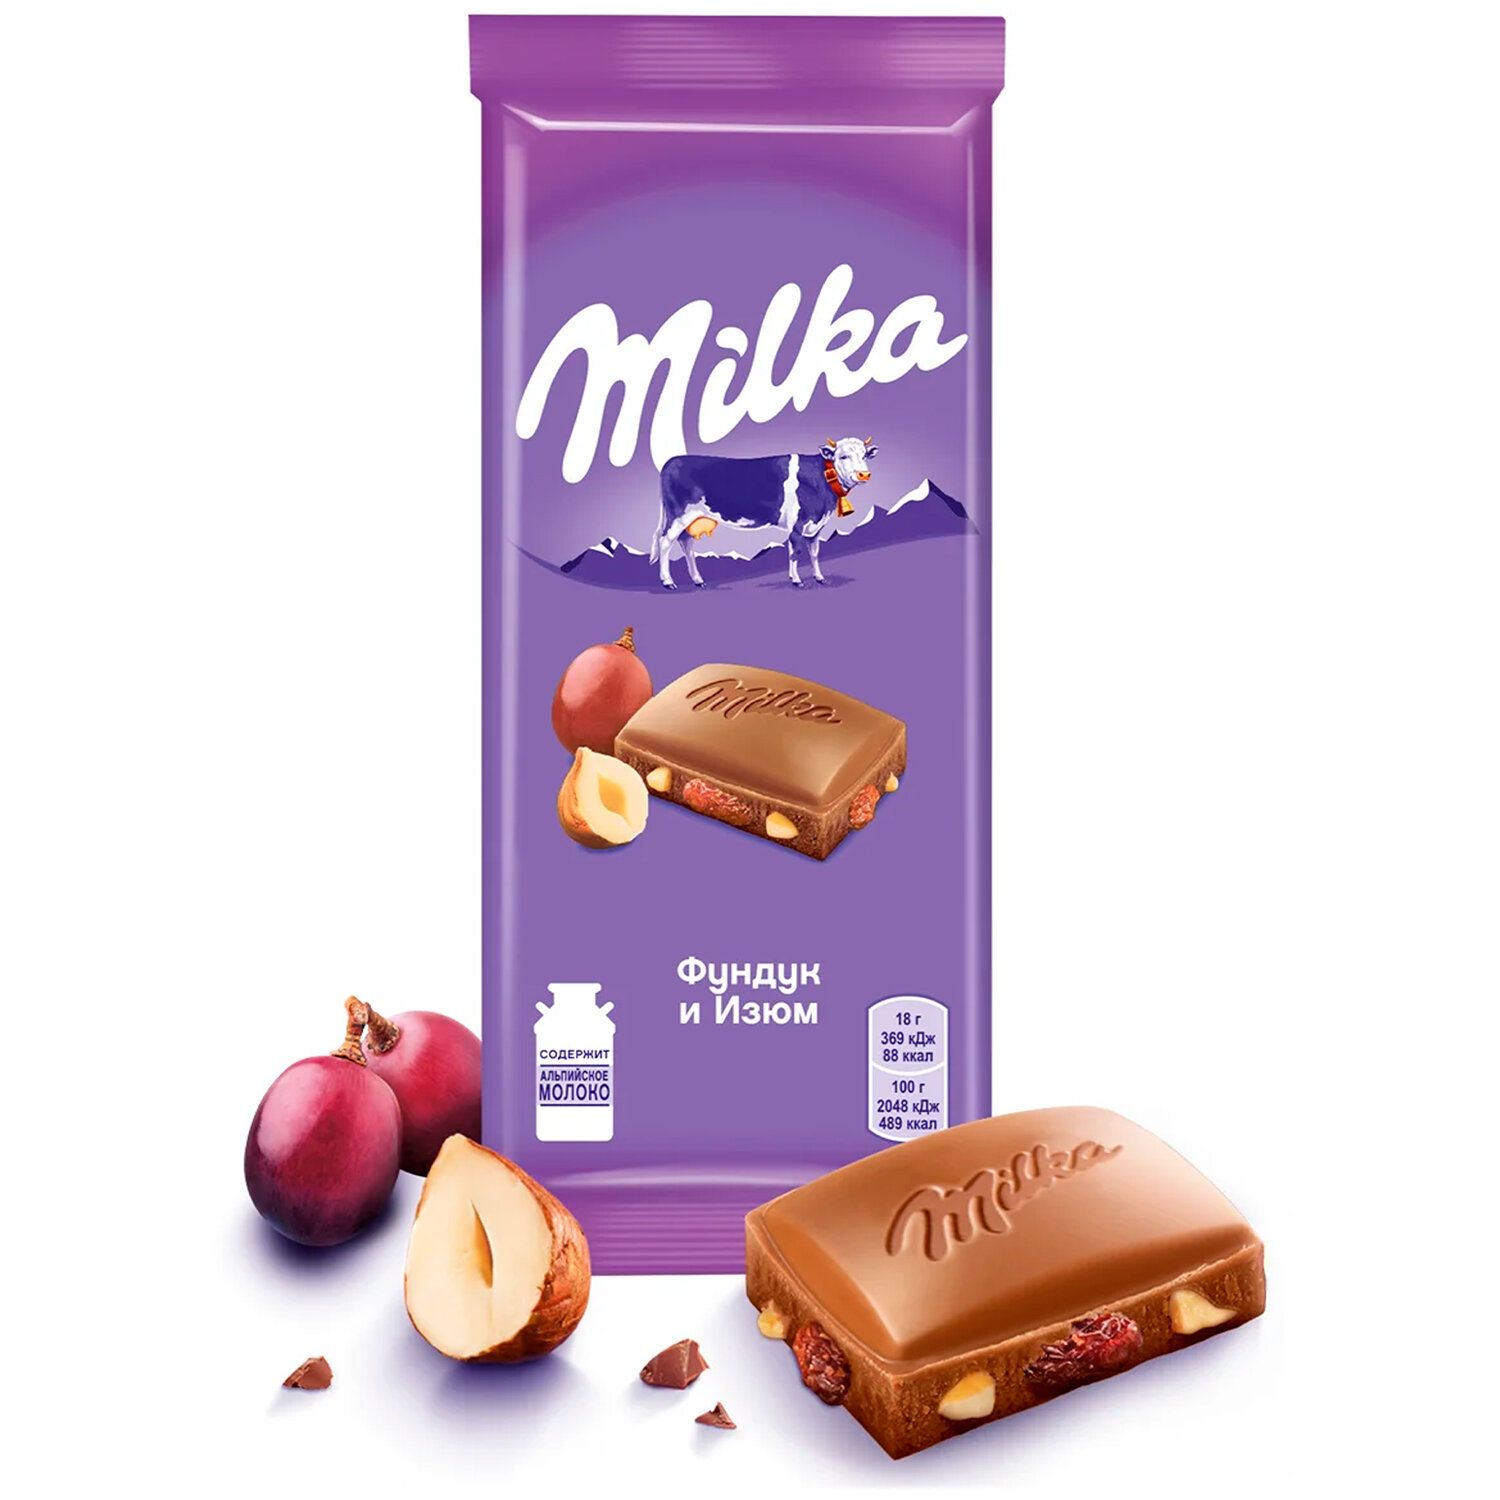 Шоколад Milka молочный с цельным фундуком 85 г